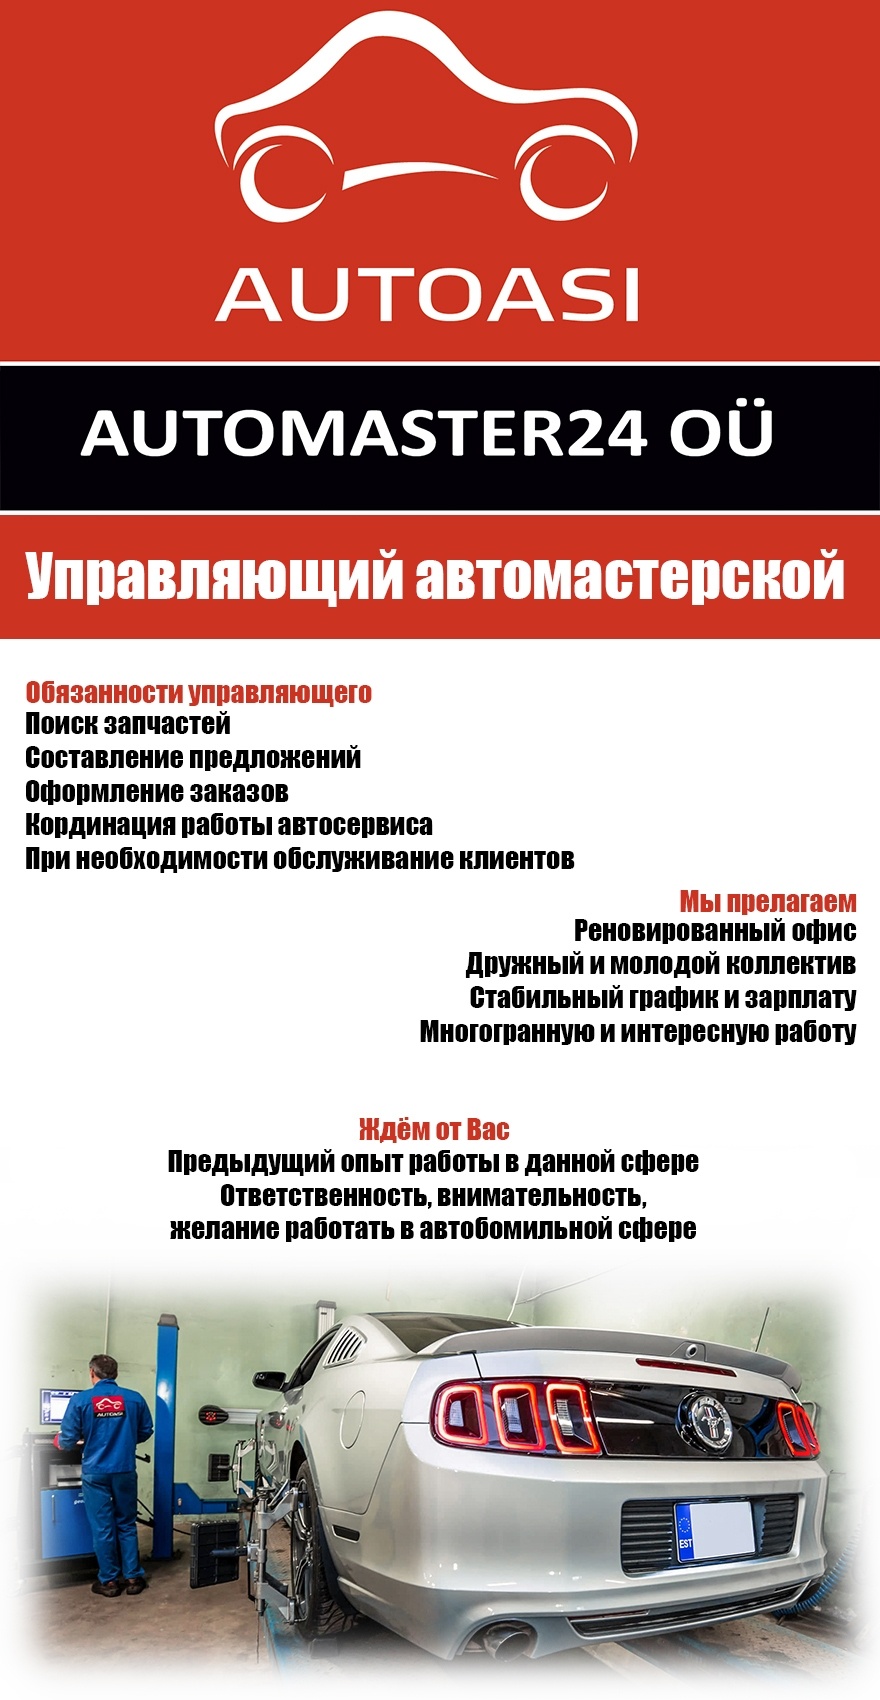 Automaster24 OÜ Управляющий автомастерской